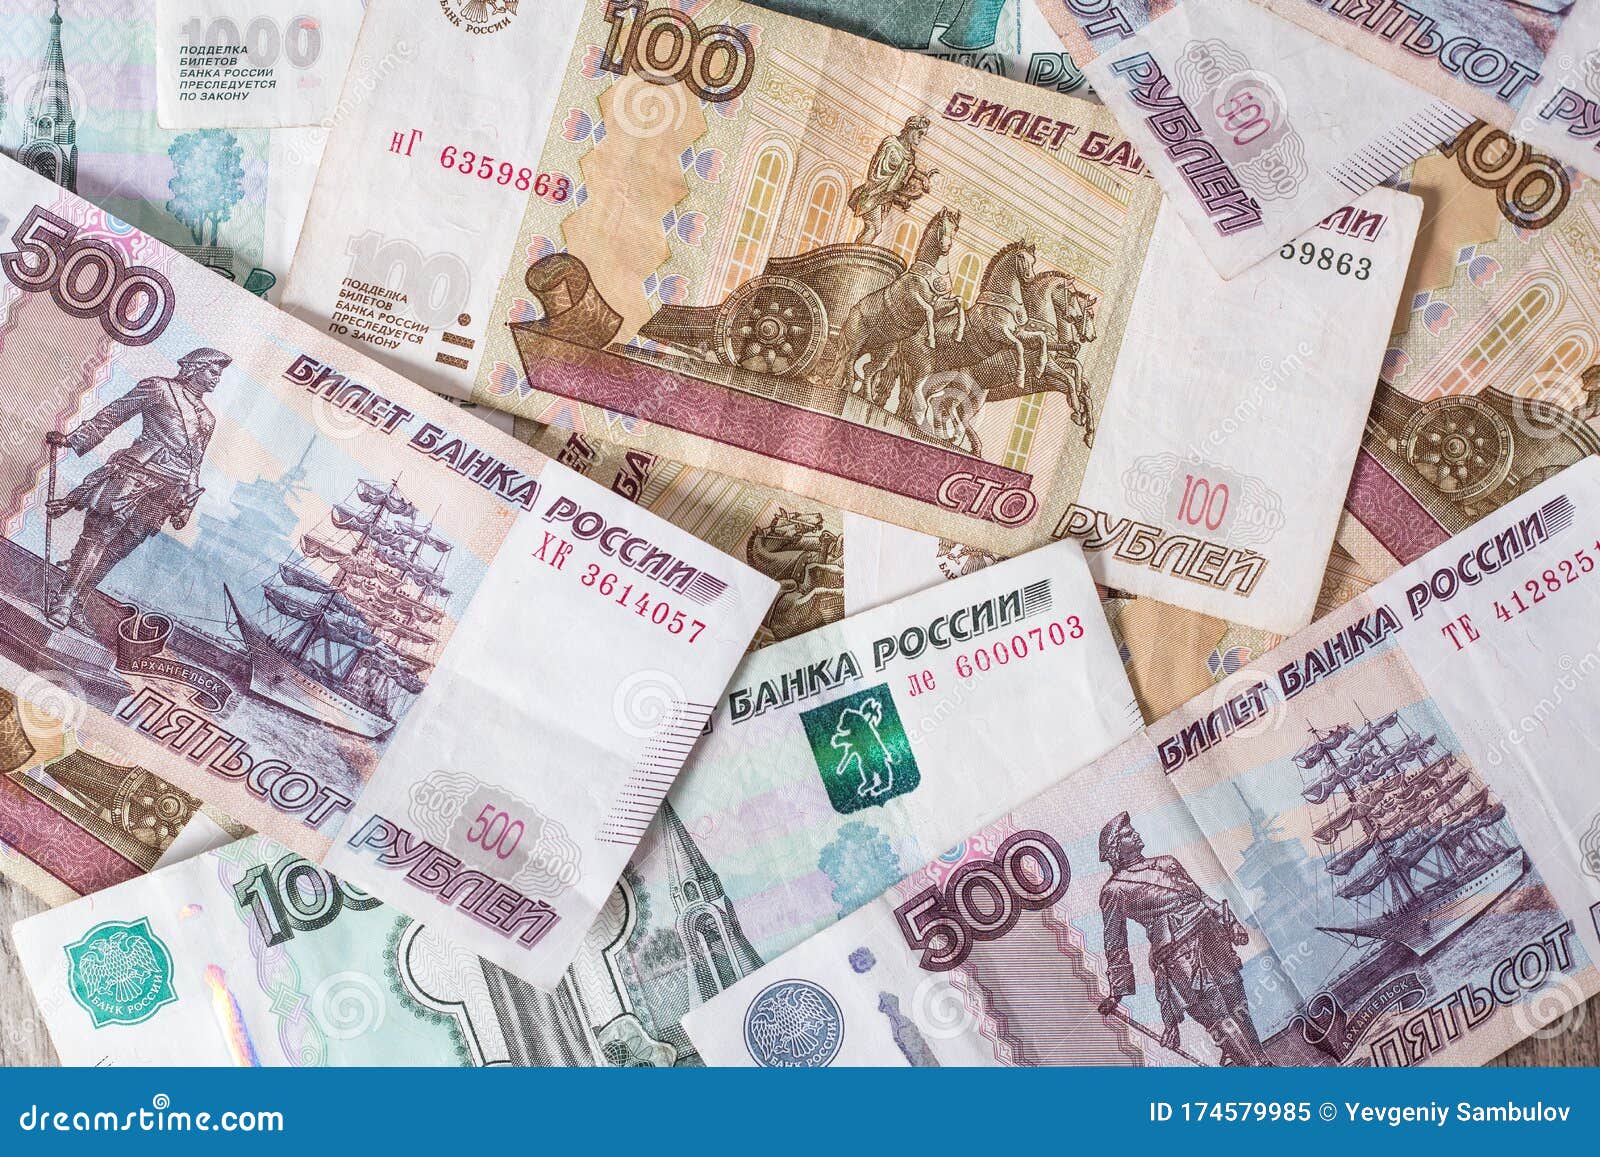 Национальная валюта России. Русский рубль. Российская валюта фото. Фон российские бумажные купюры.